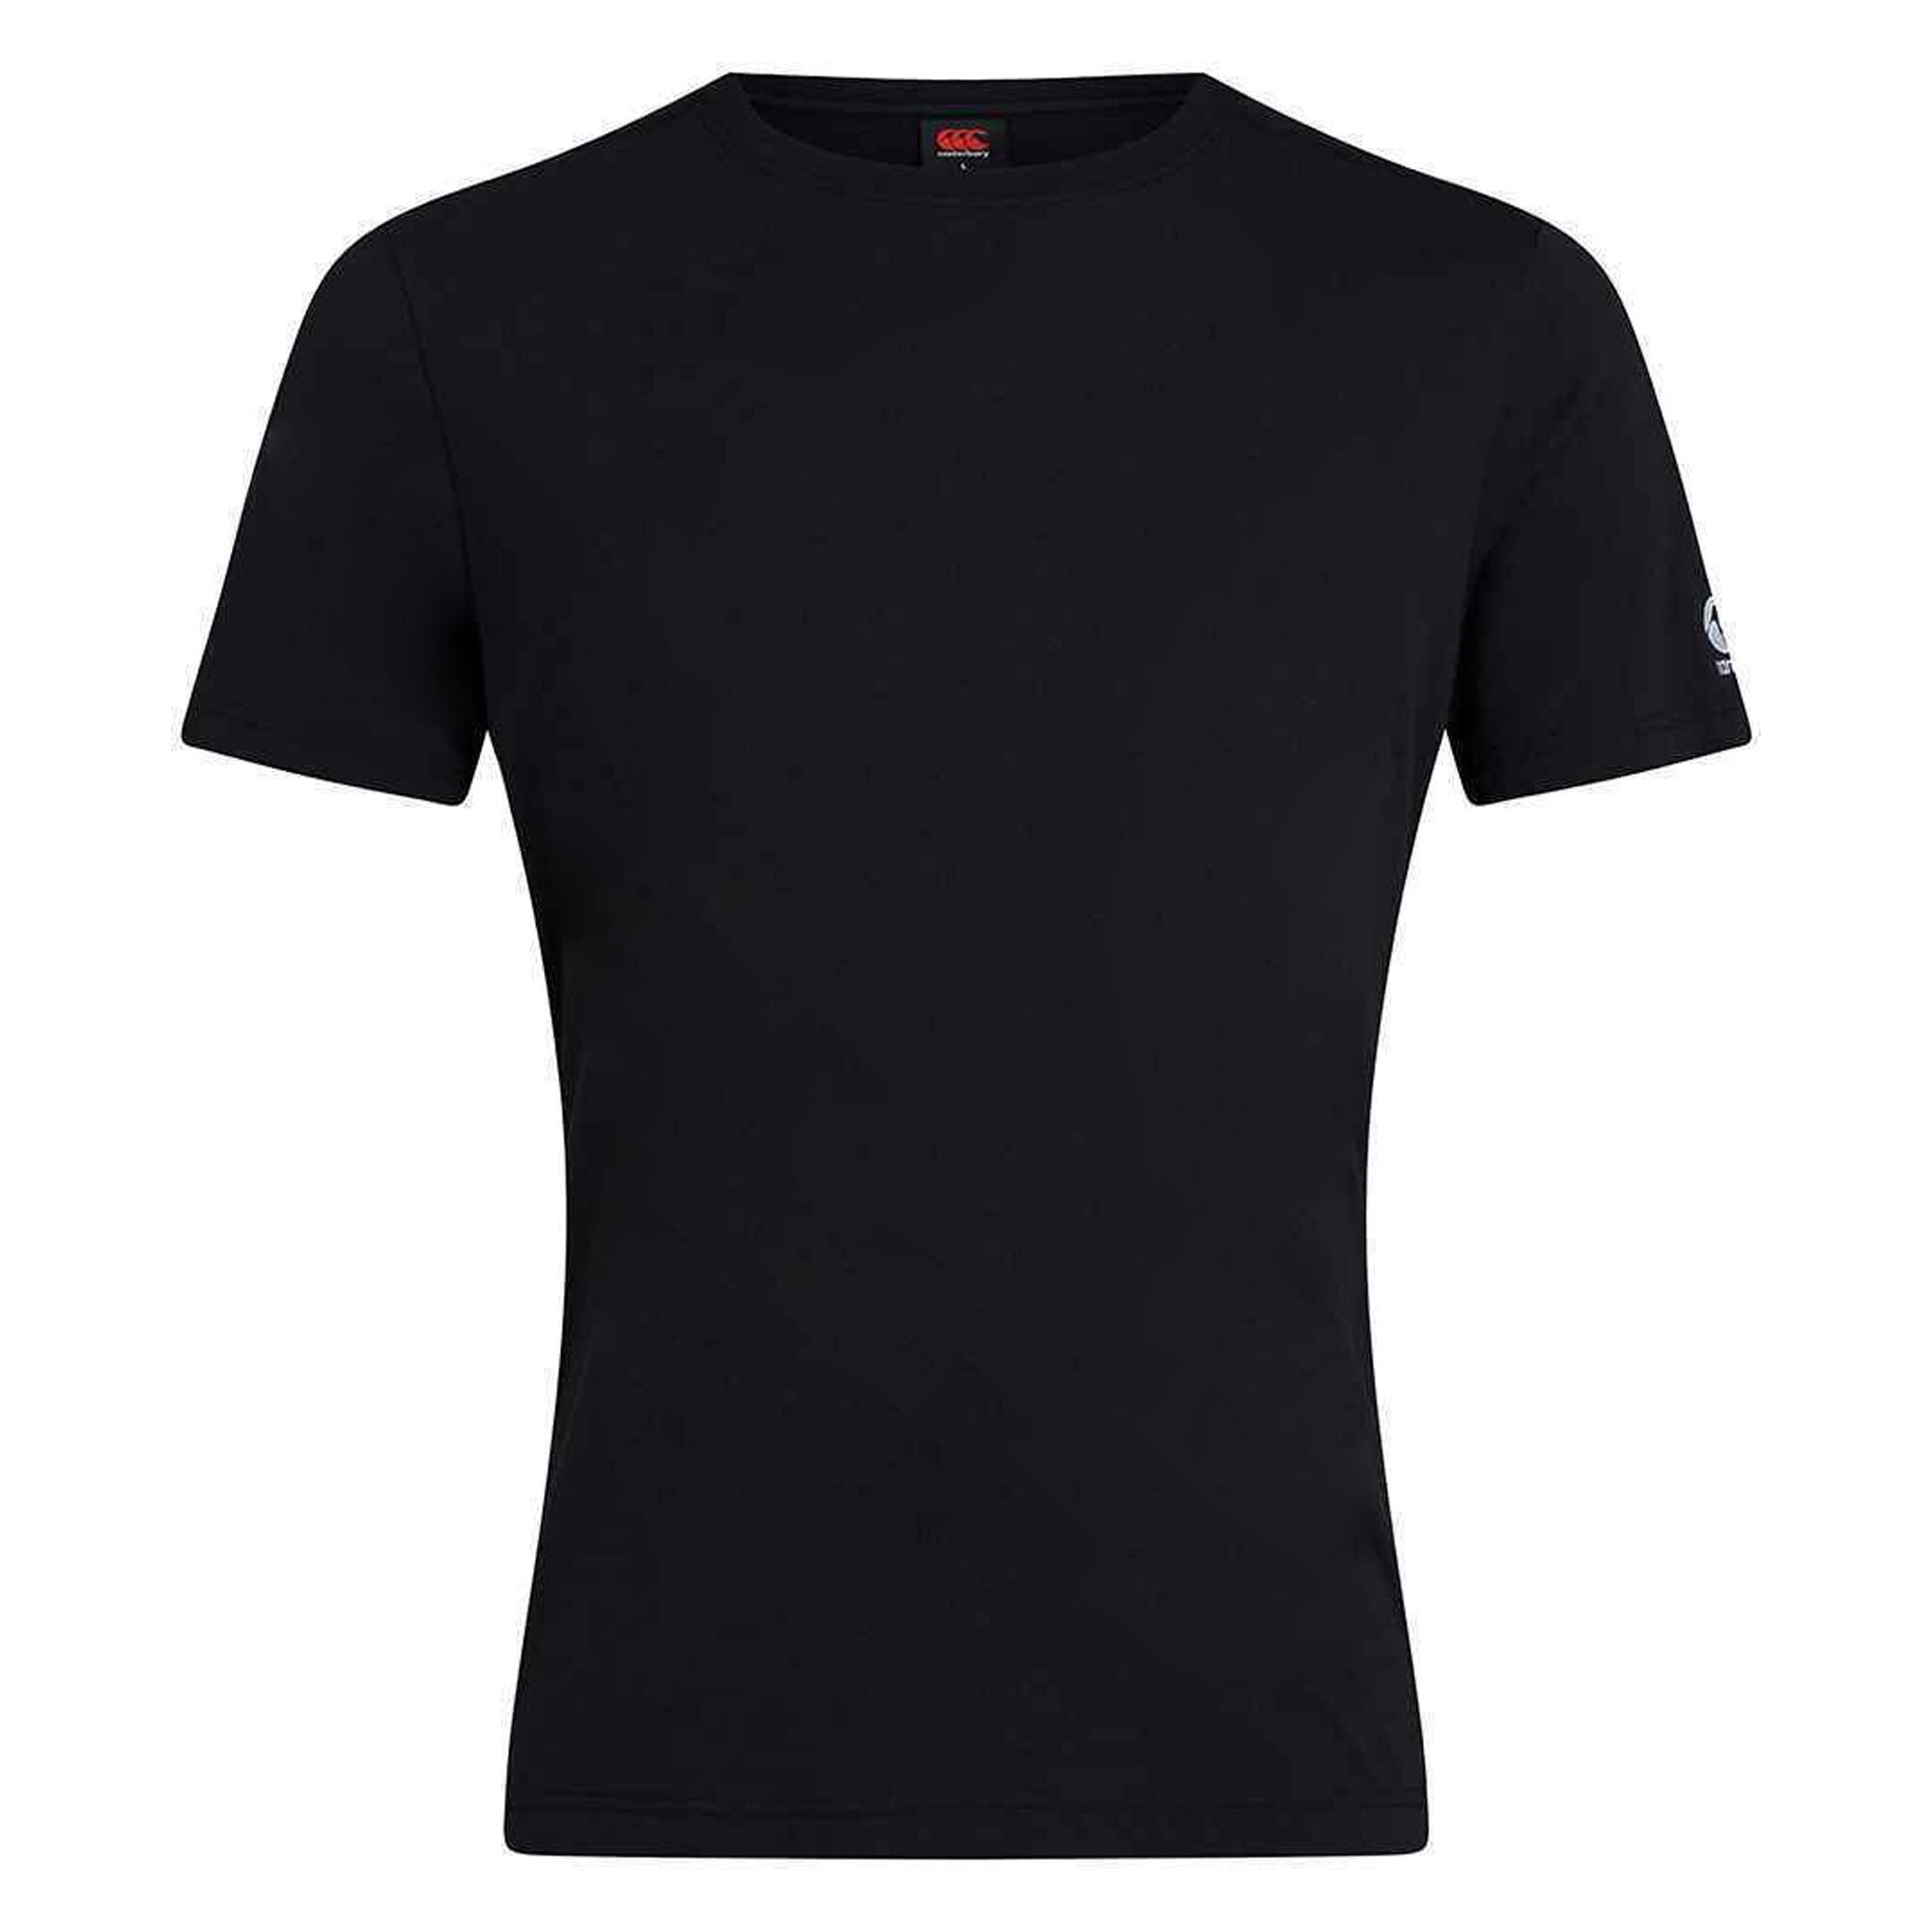 Unisex Adult Club Plain TShirt (Black) 1/3